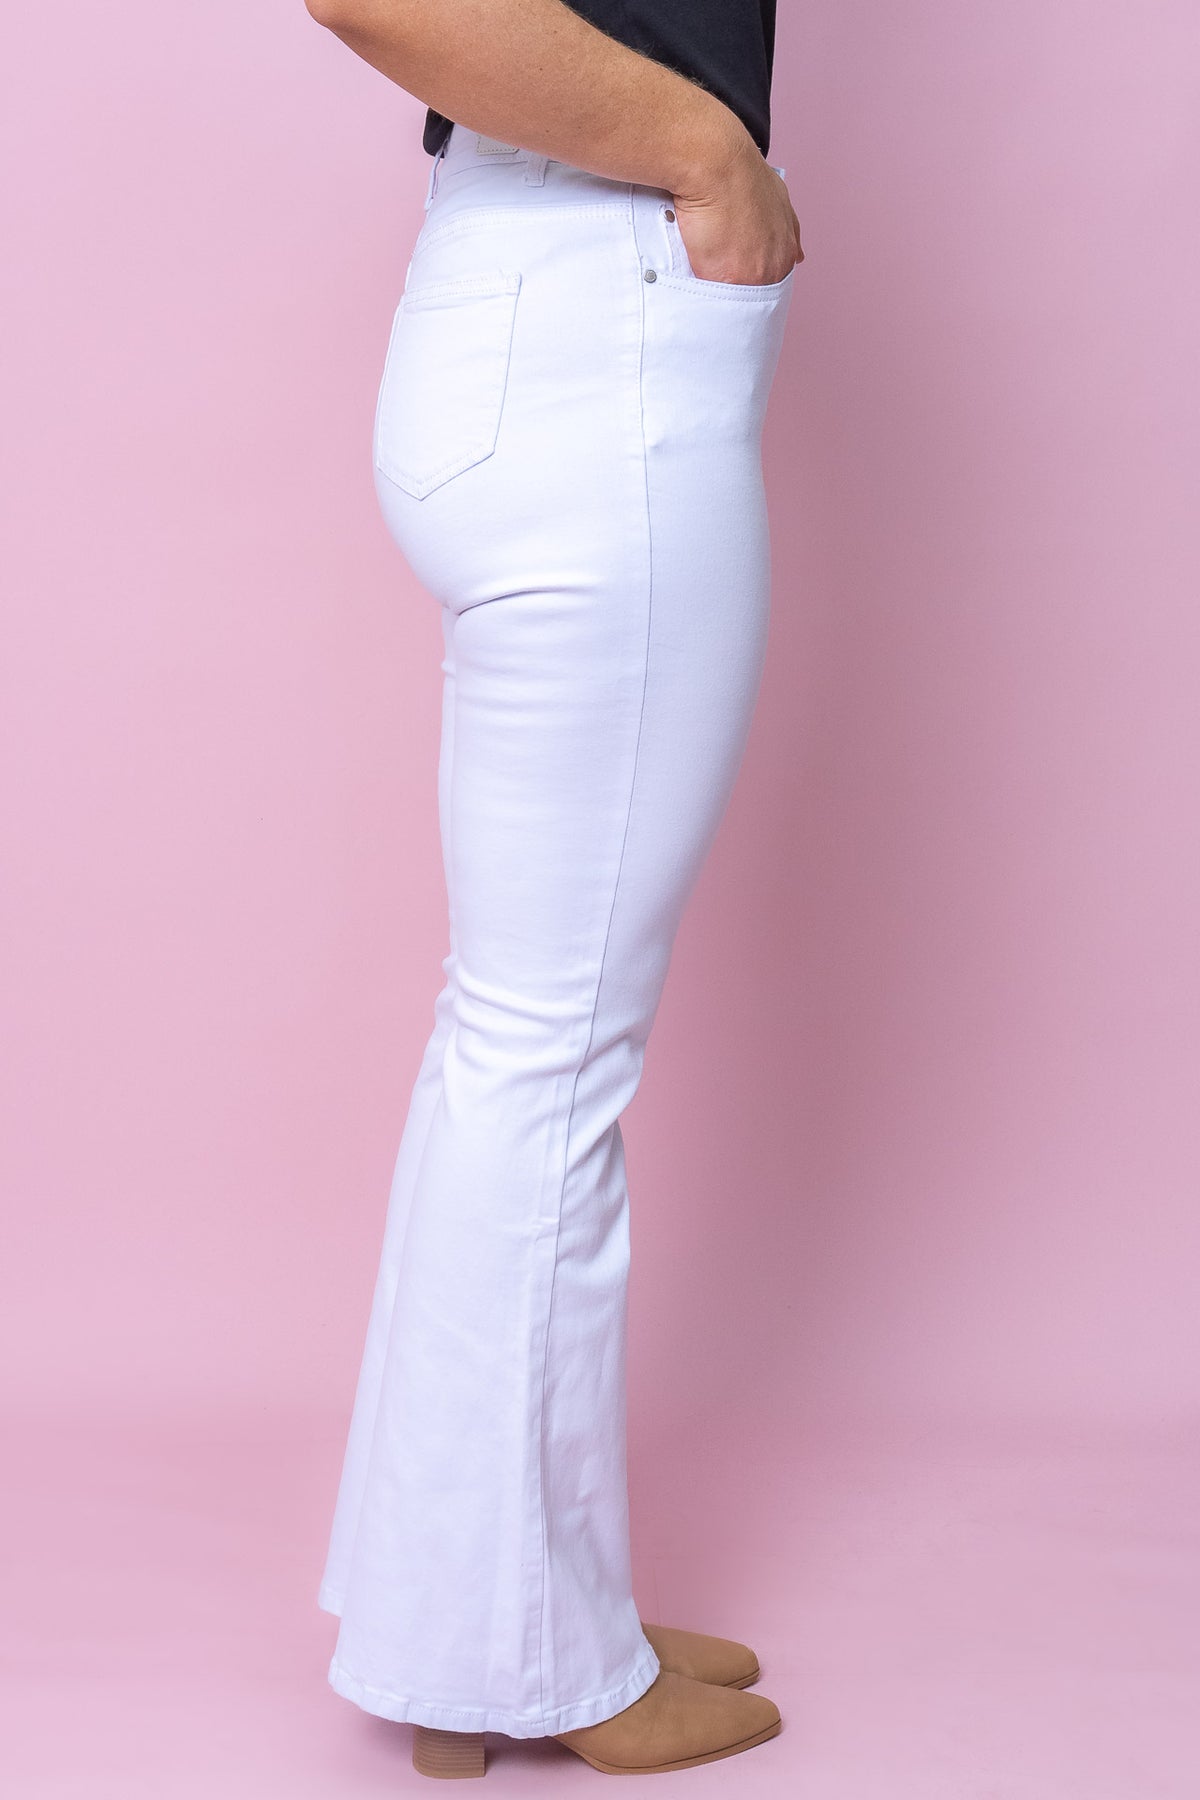 Darlena Jeans in White